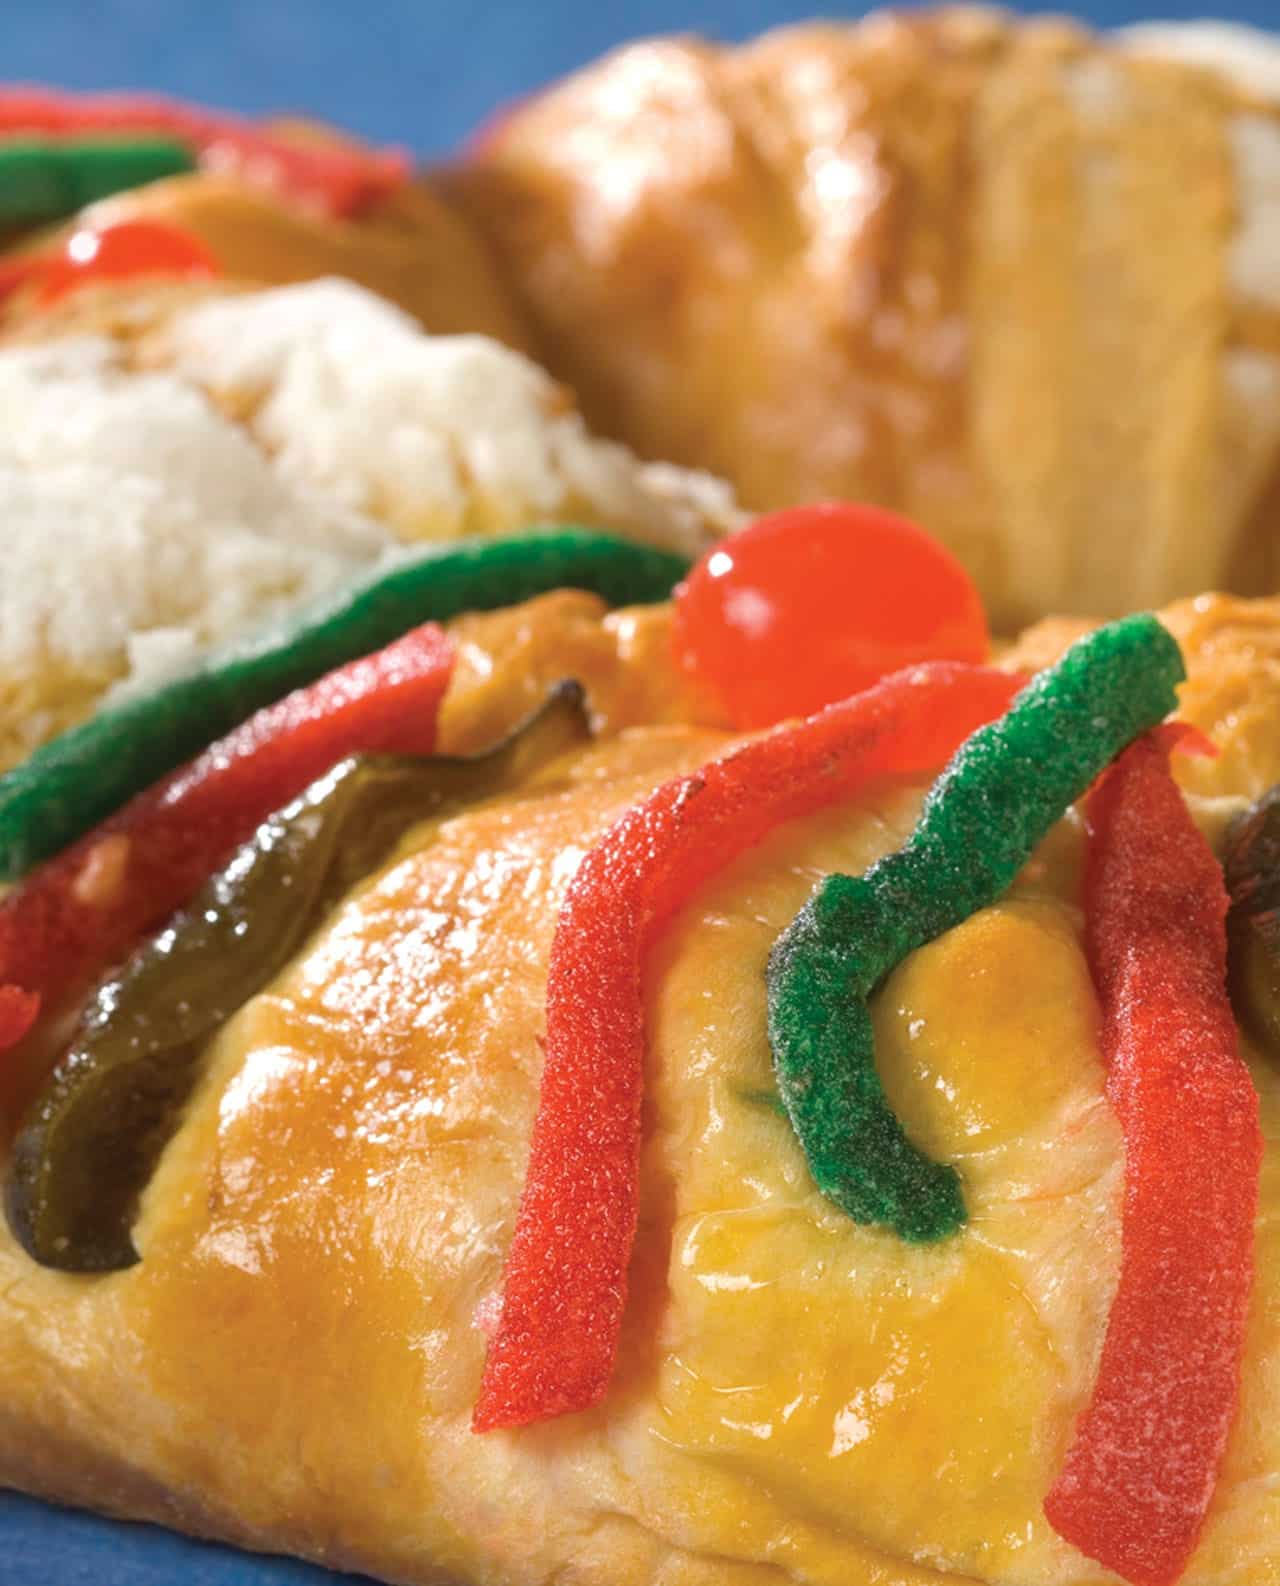 La rosca de Reyes también puede ir rellena al gusto. Foto: León Rafael.